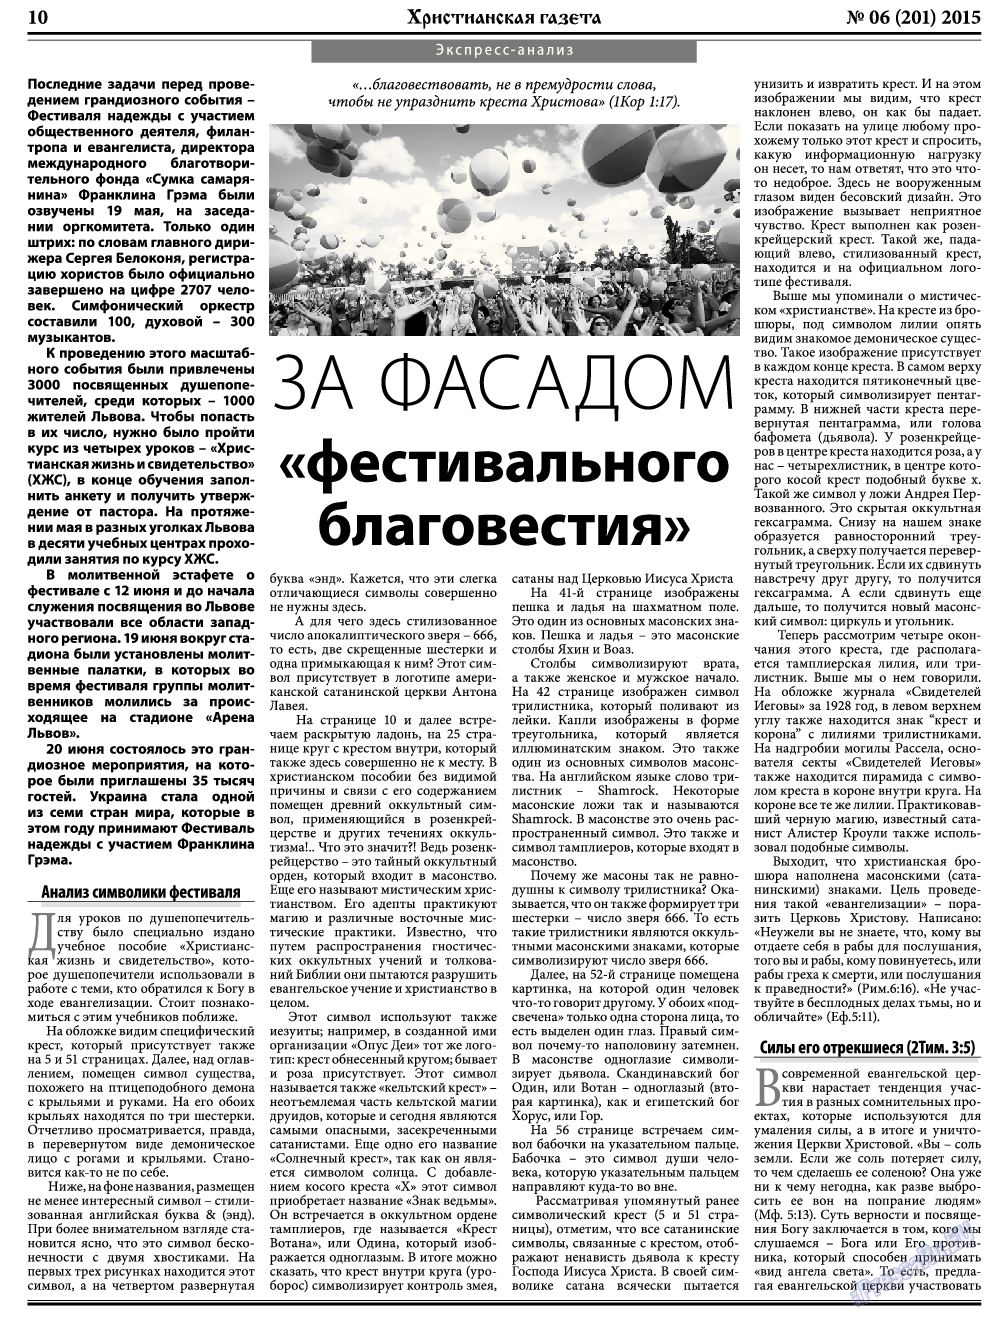 Христианская газета, газета. 2015 №6 стр.10